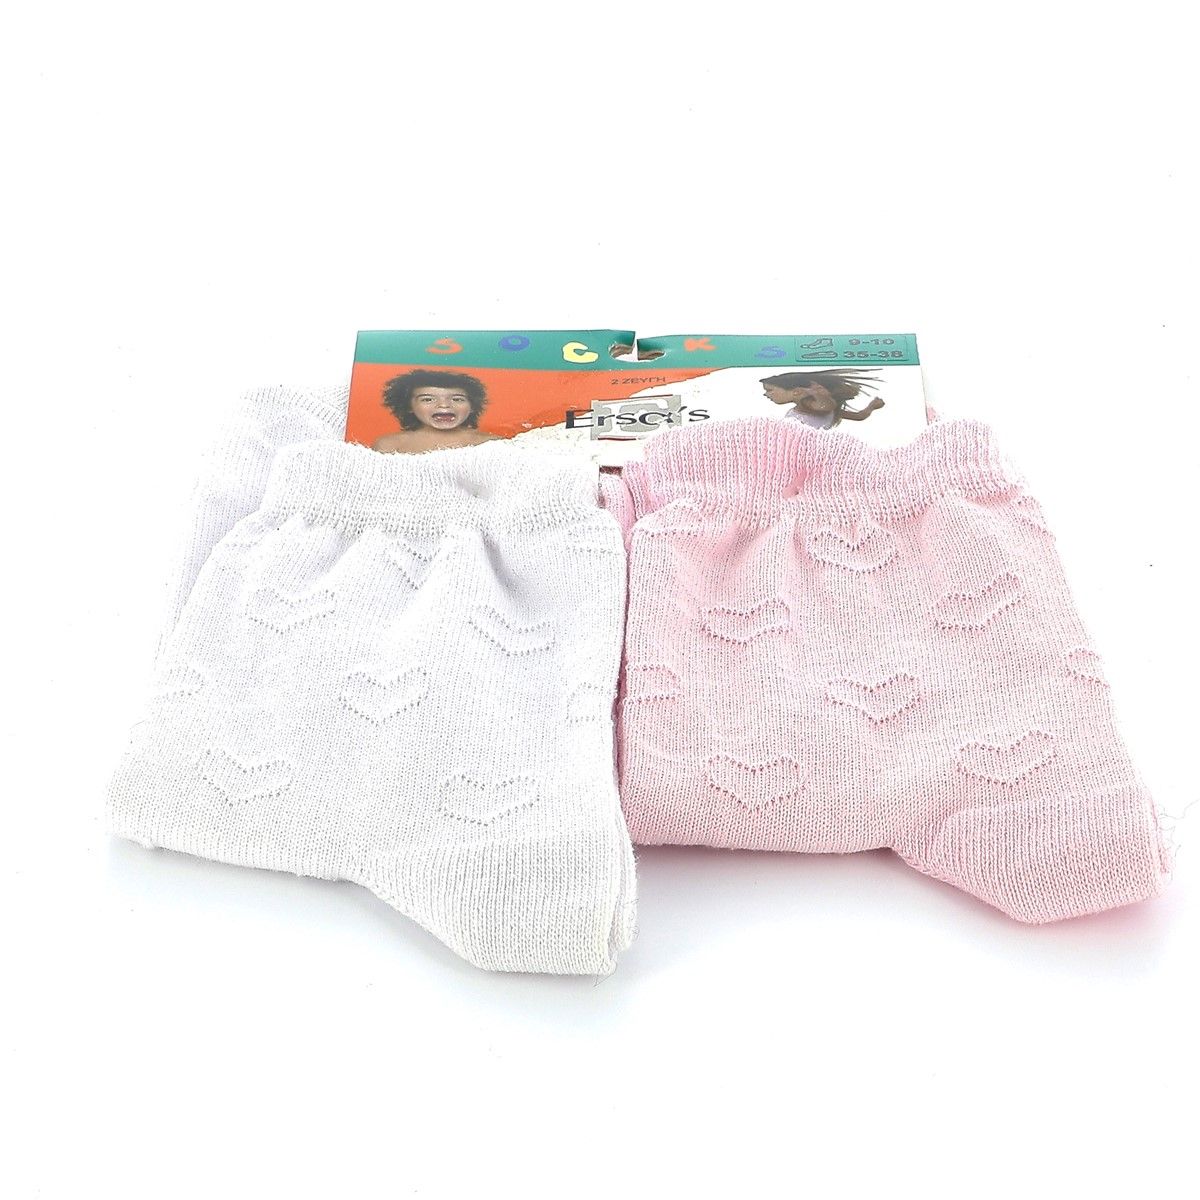 Παιδικό Καλτσάκι για Κορίτσι Ersa Χρώματος Λευκό - Ροζ 20191